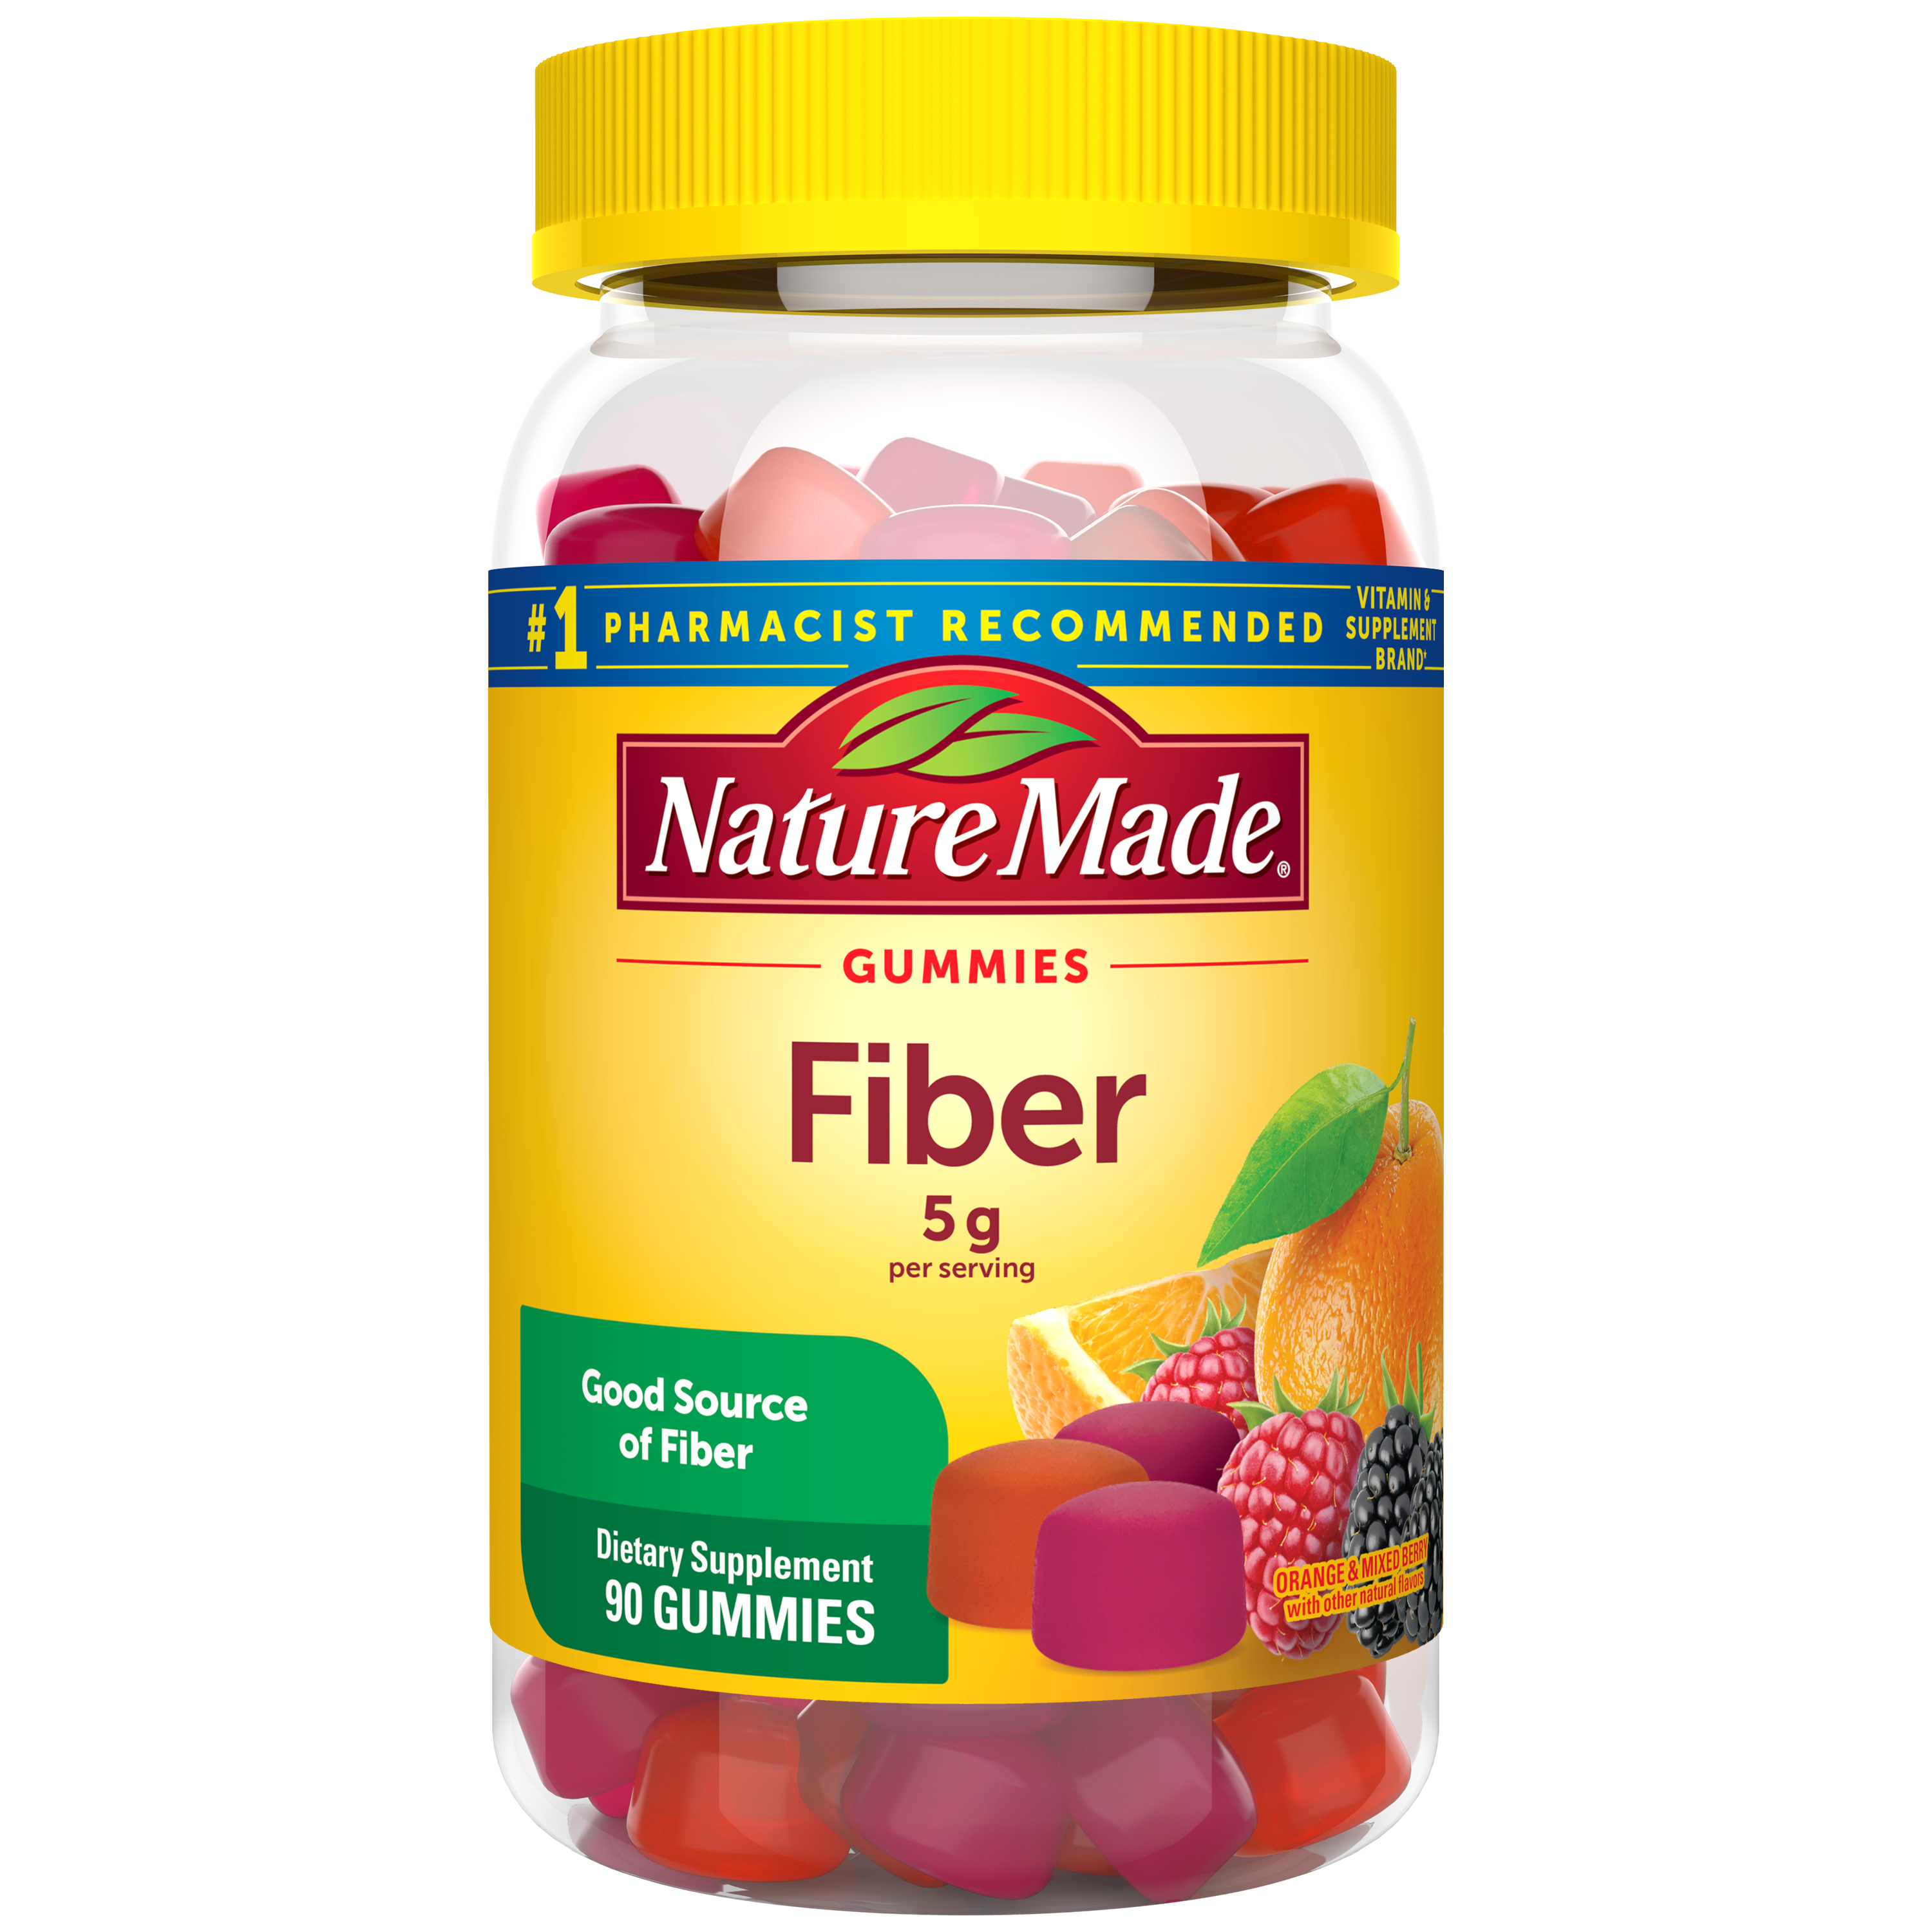 Fiber Choice Prebiotic Fiber Supplement 90 ea